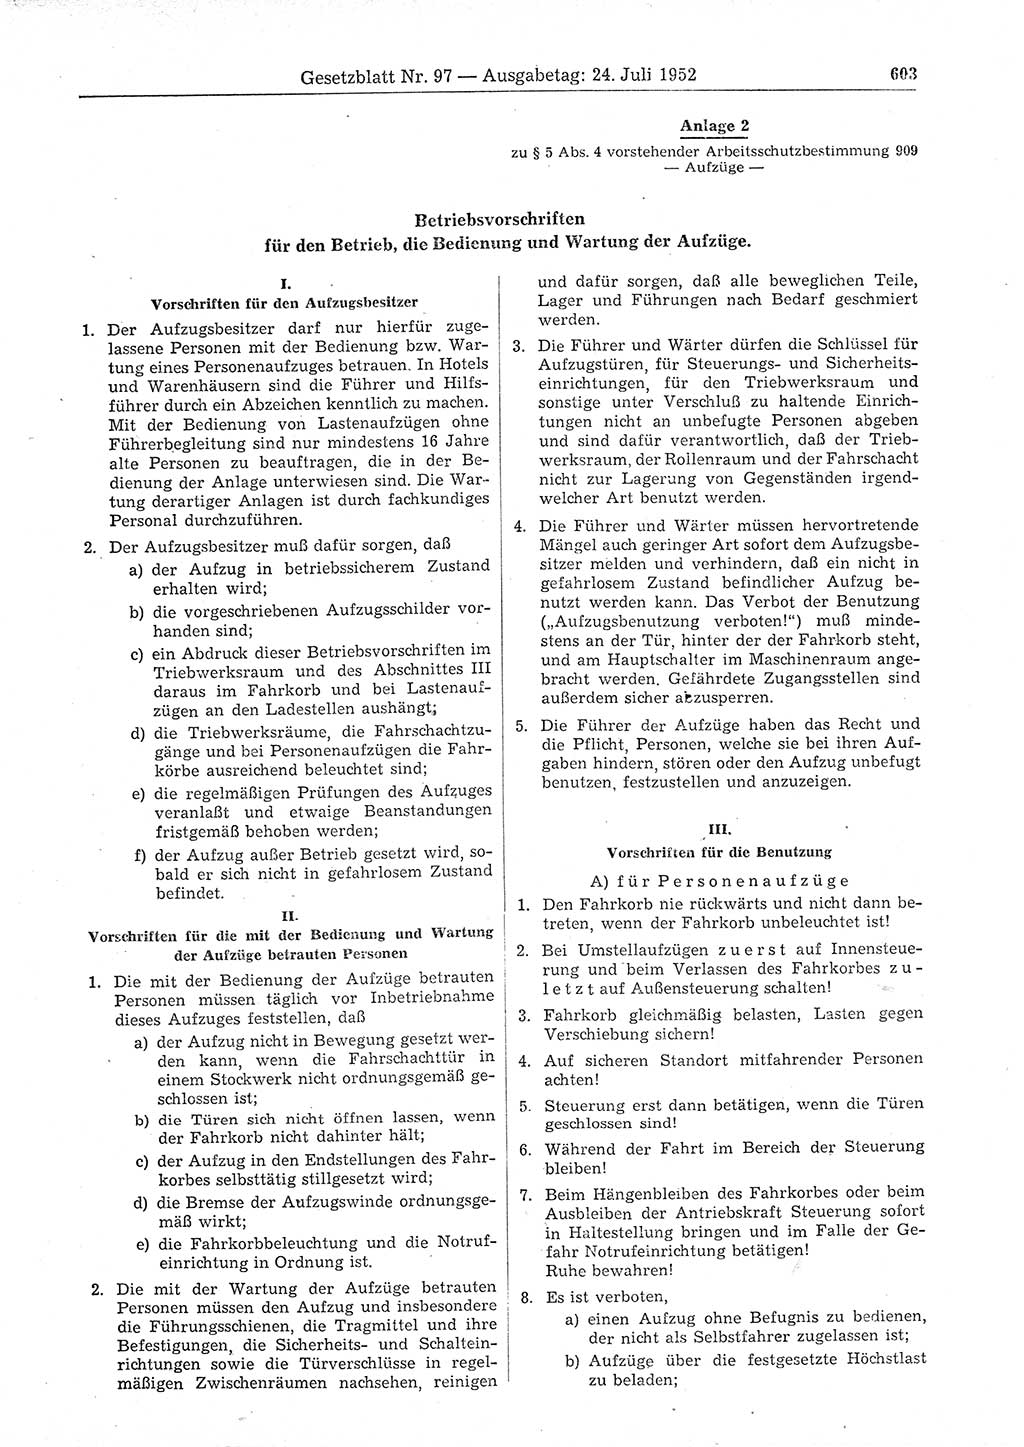 Gesetzblatt (GBl.) der Deutschen Demokratischen Republik (DDR) 1952, Seite 603 (GBl. DDR 1952, S. 603)